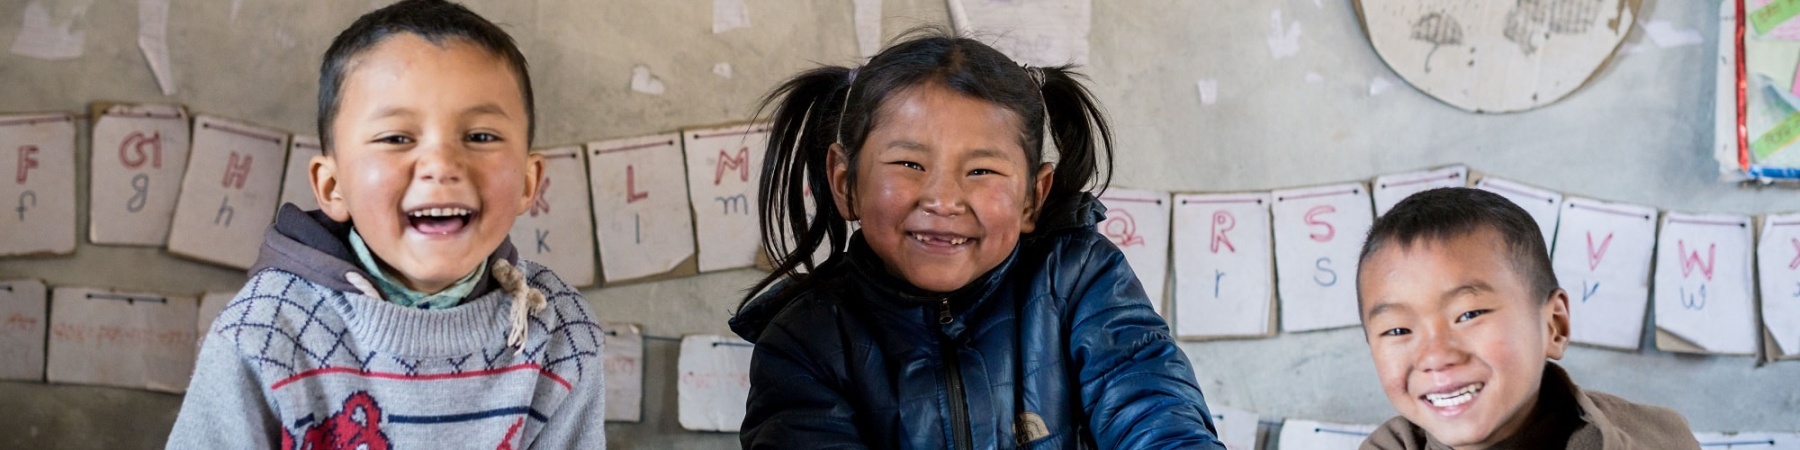 3 bambini asiatici sorridenti seduti a un banco di scuola